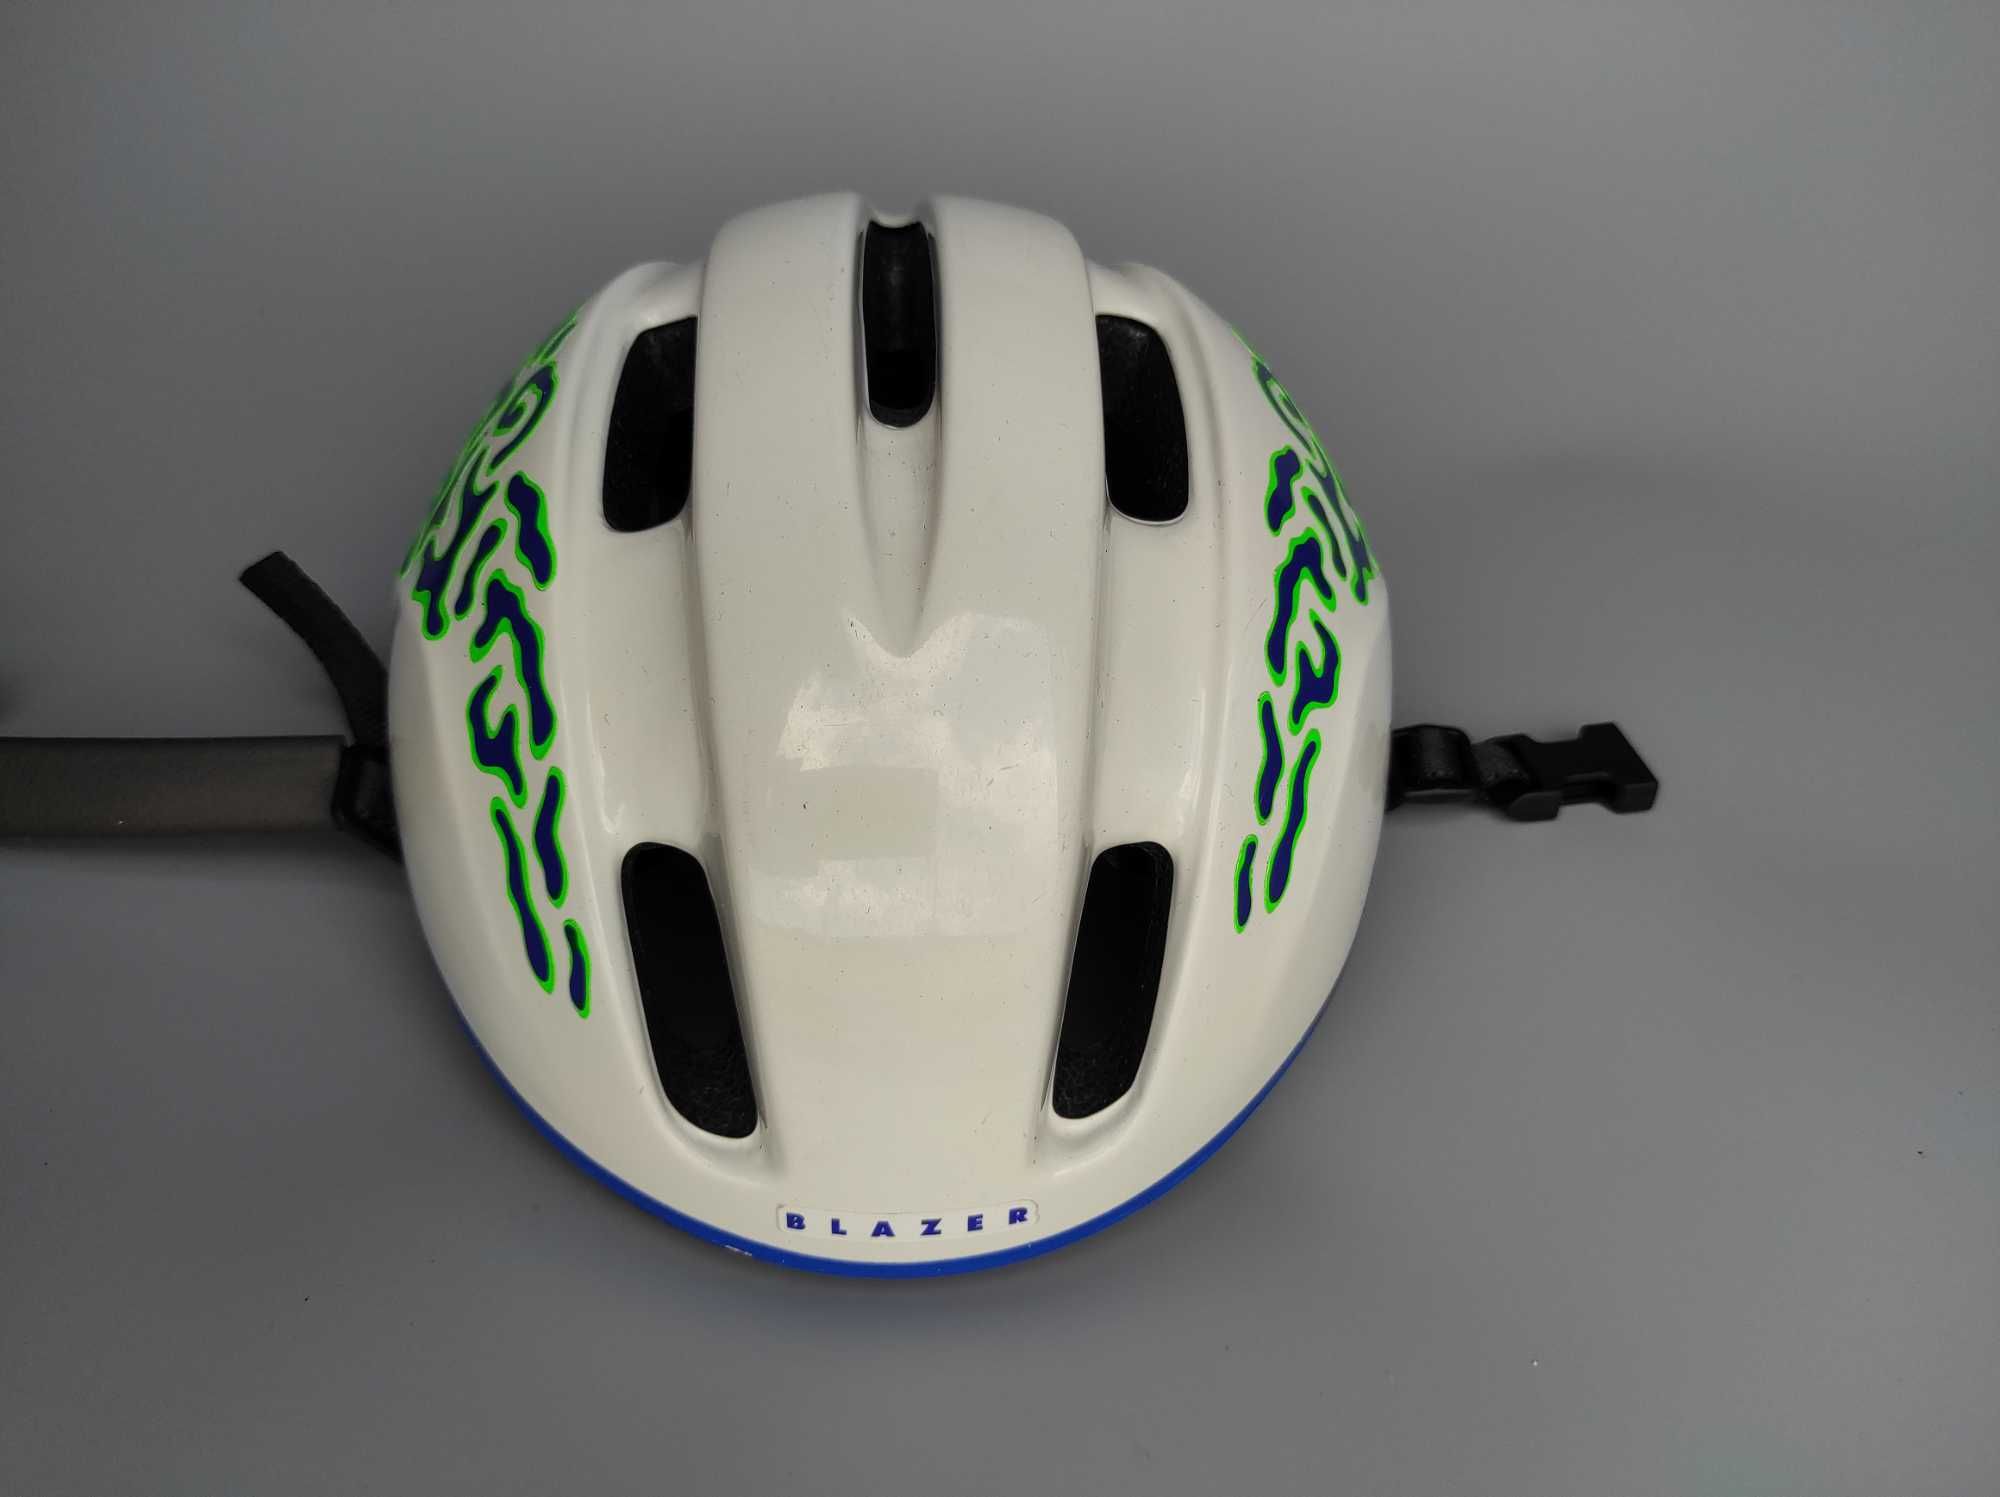 Шлем защитный Blazer USA, размер 55-56см, велосипедный.